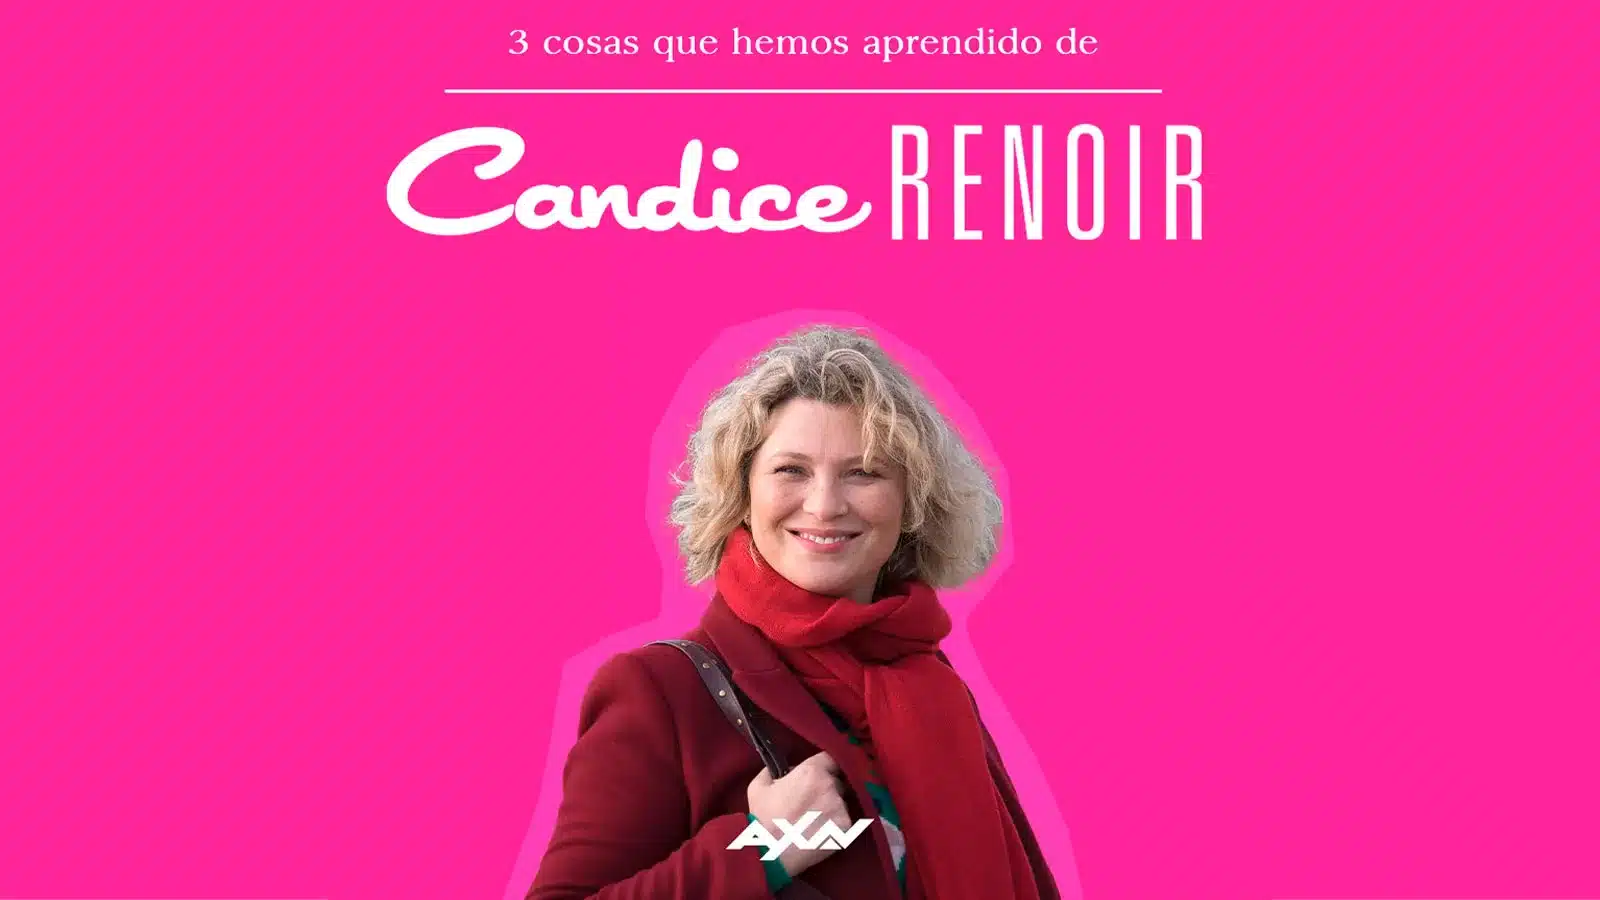 Imagen promocional del episodio especial de Candice Renoir.